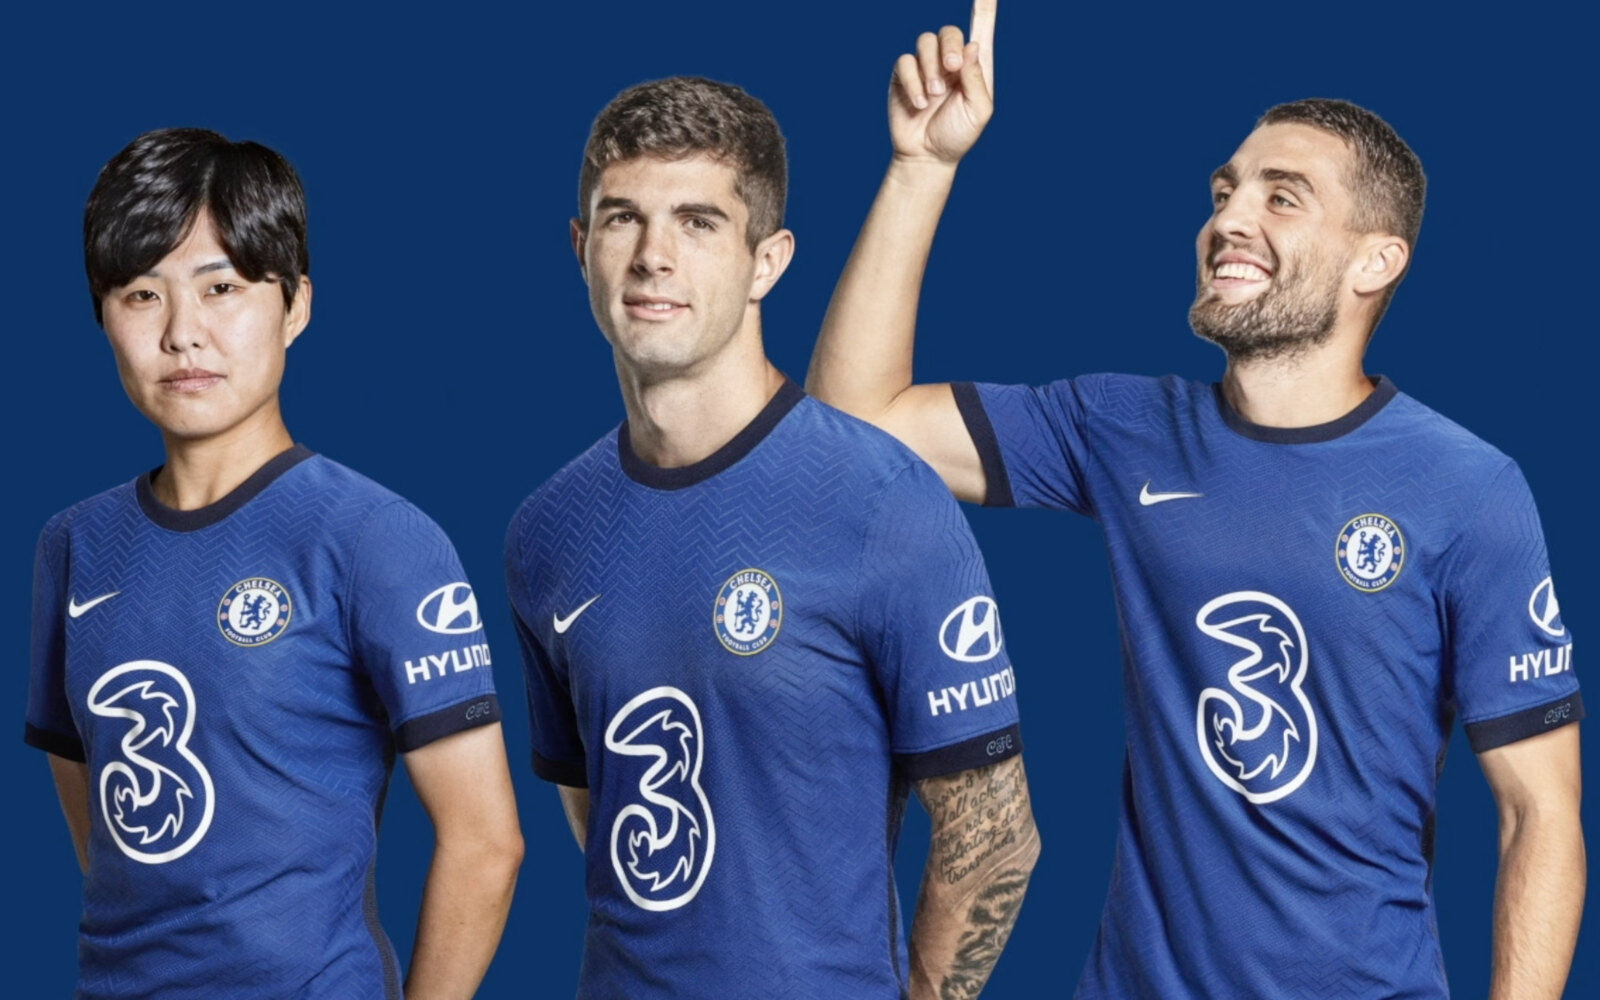 Imagen de promocin del patrocinio del Chelsea por parte de Hyundai